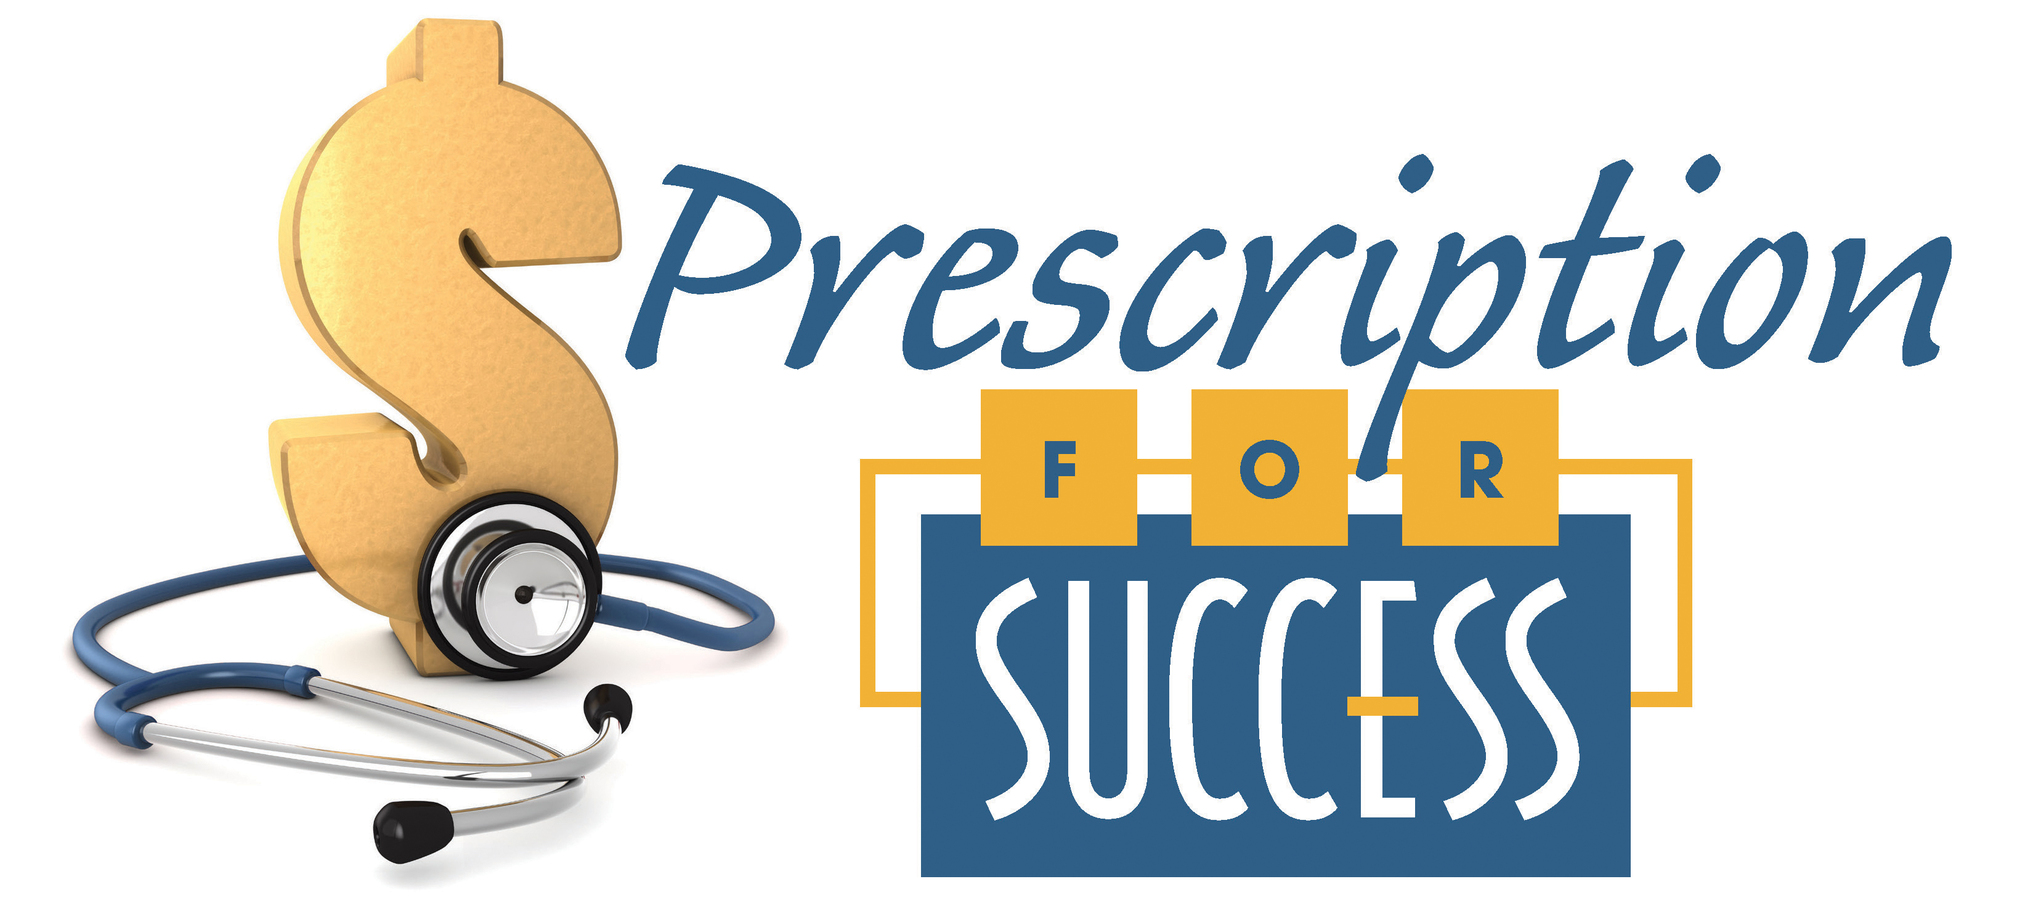 ProductivityExperts Prescription For Success